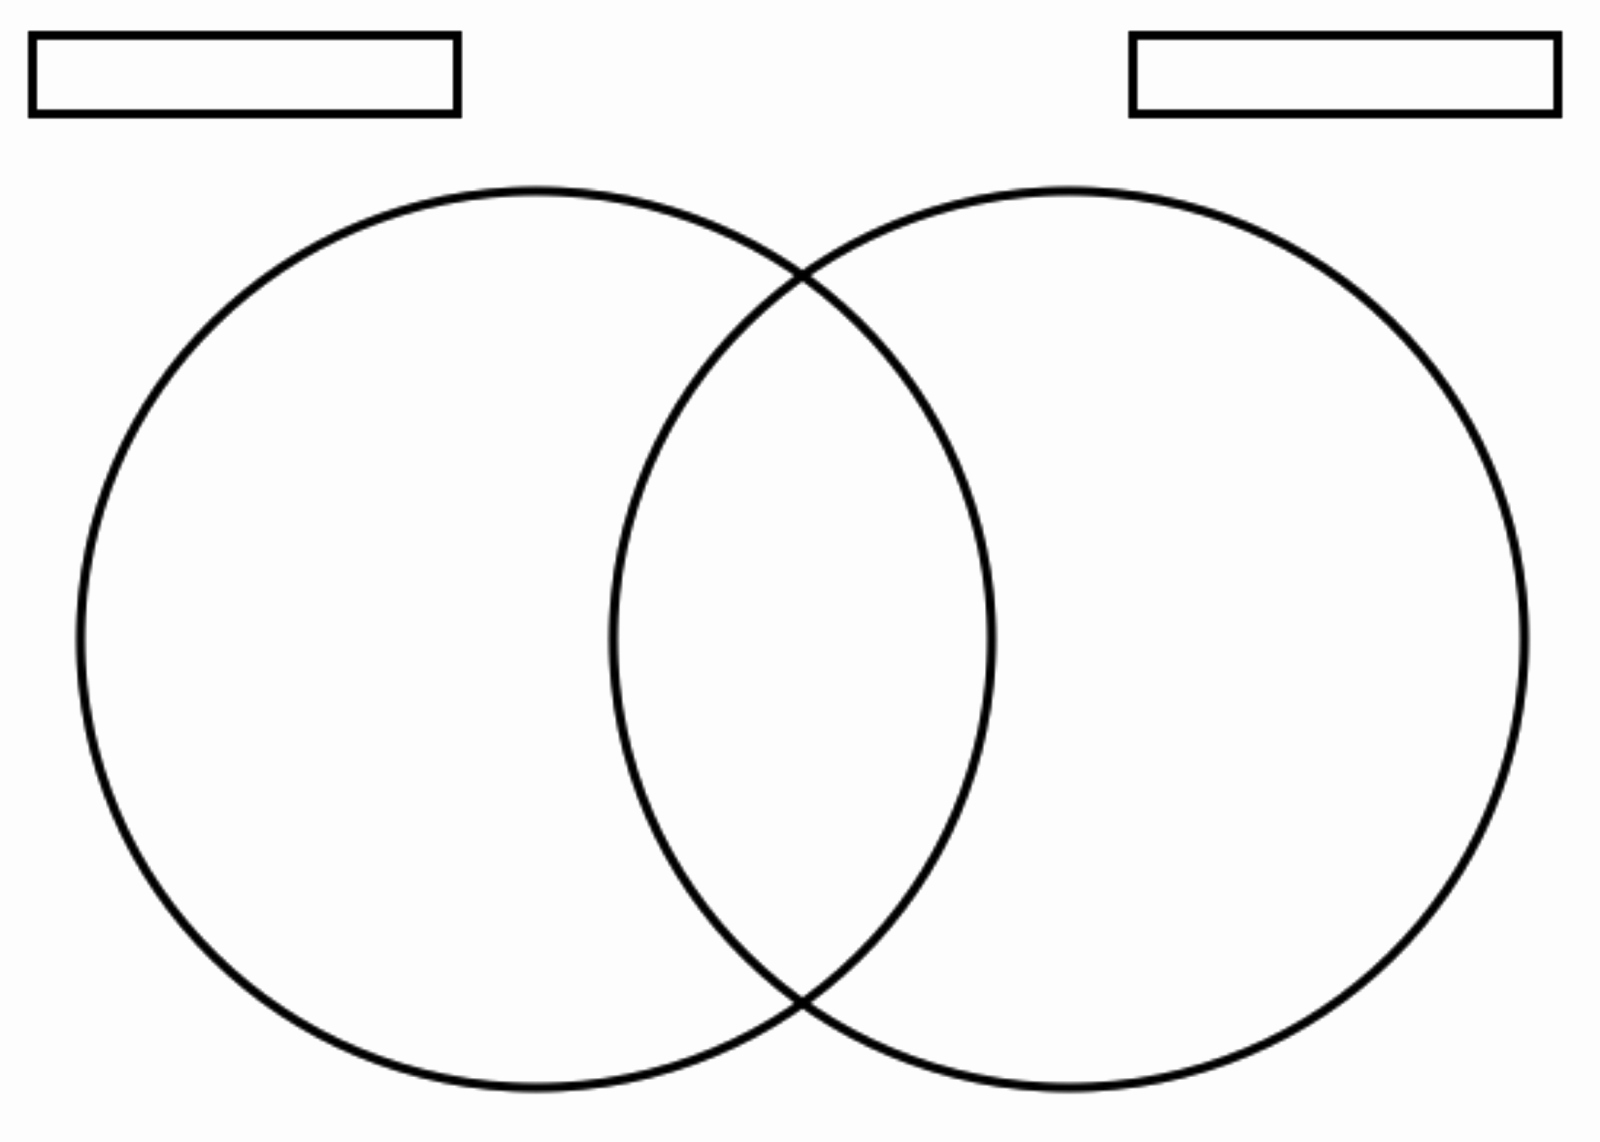 Venn Diagram Template Word New Creating A Venn Diagram Template